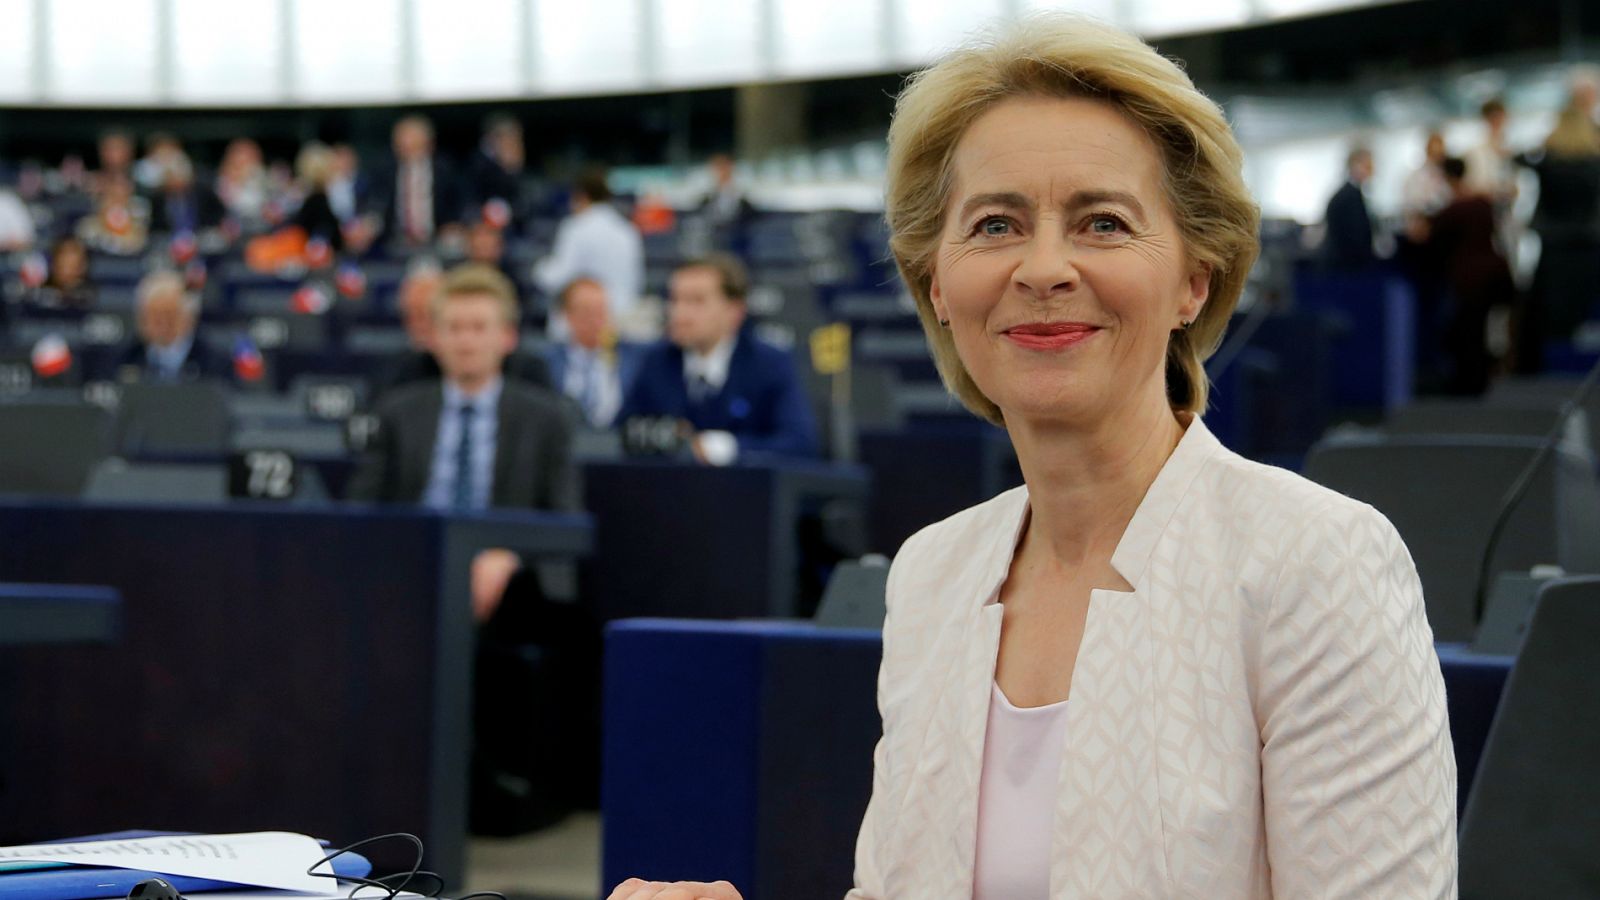 Comisión Europea | Ursula von der Leyen promete medidas sociales y medioambientales para convencer al Parlamento Europeo - RTVE.es